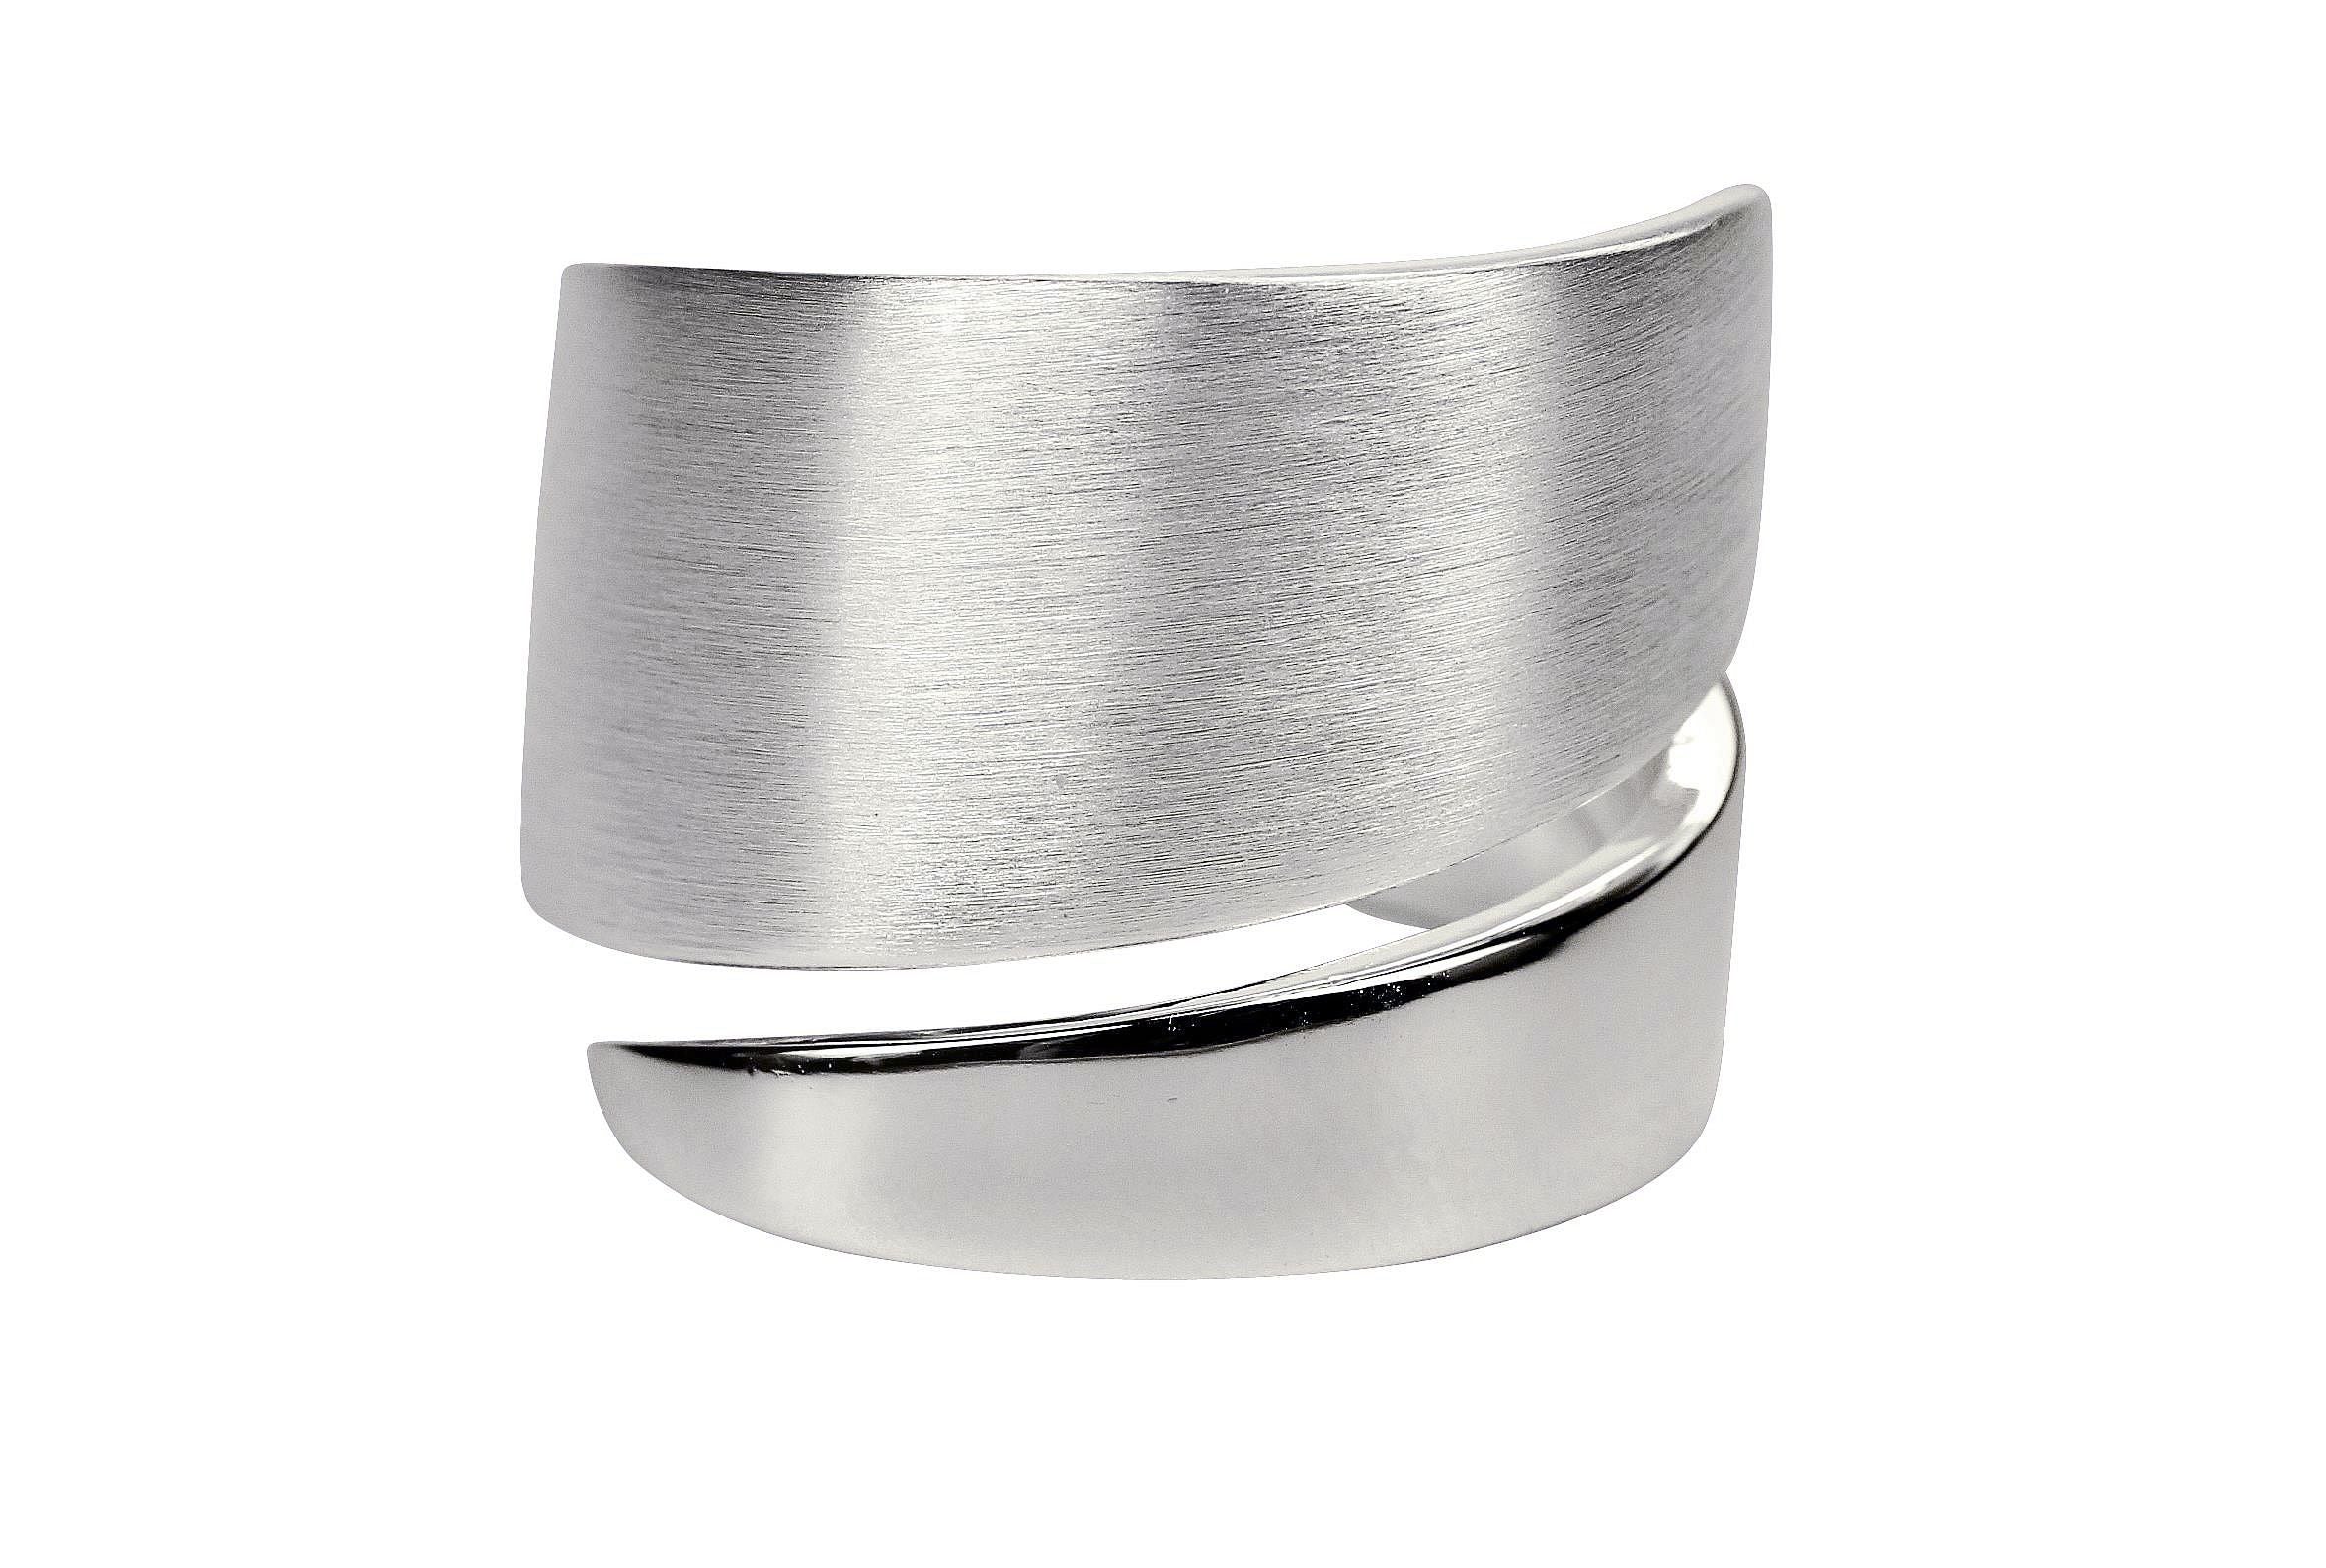 Spitz zulaufender Bandring aus Silber für Damen in den Größen 64 bis 70, der oben nicht verlötet ist und sich nach unten hin verjüngt.